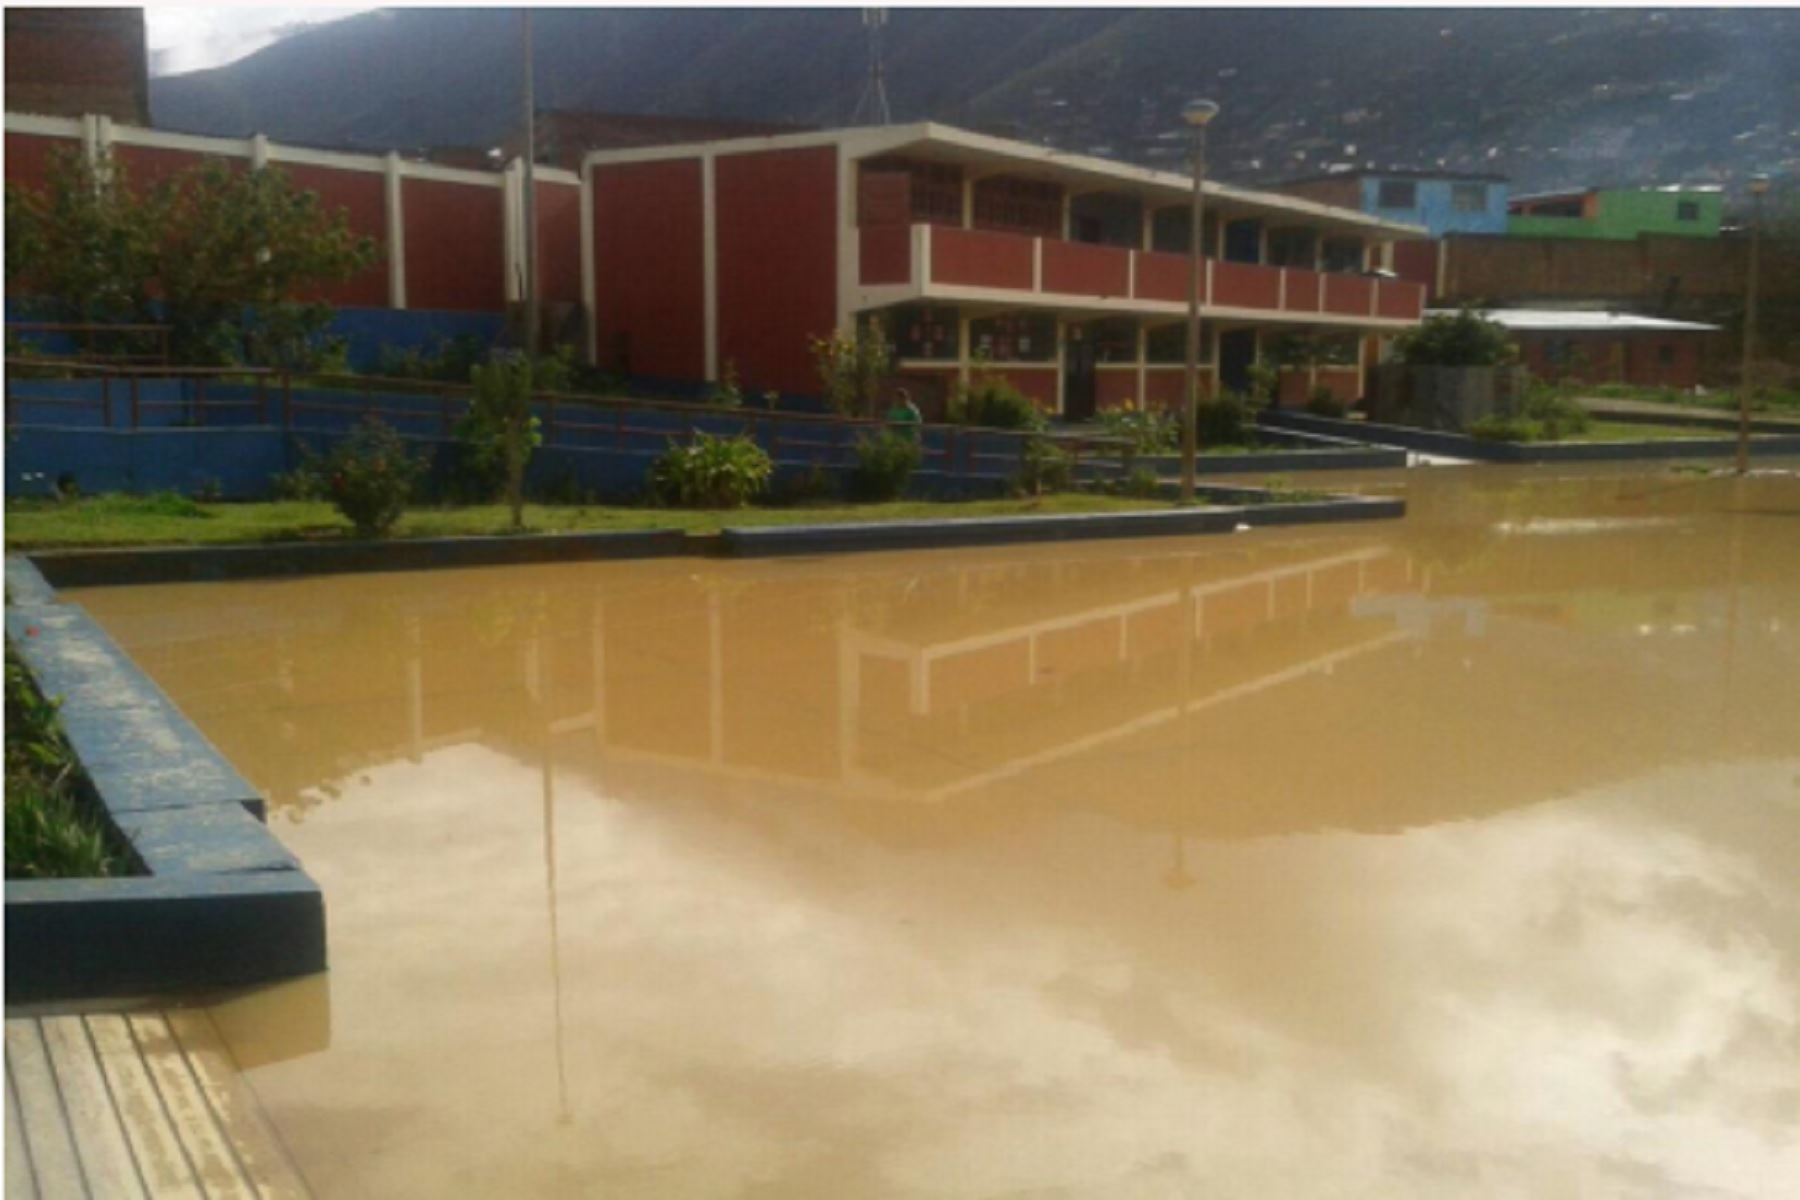 Debido a las lluvias intensas durante esta madrugada en la región Huánuco, gran parte delos distritos de Pillcomarca y Amarilis quedaron inundados.